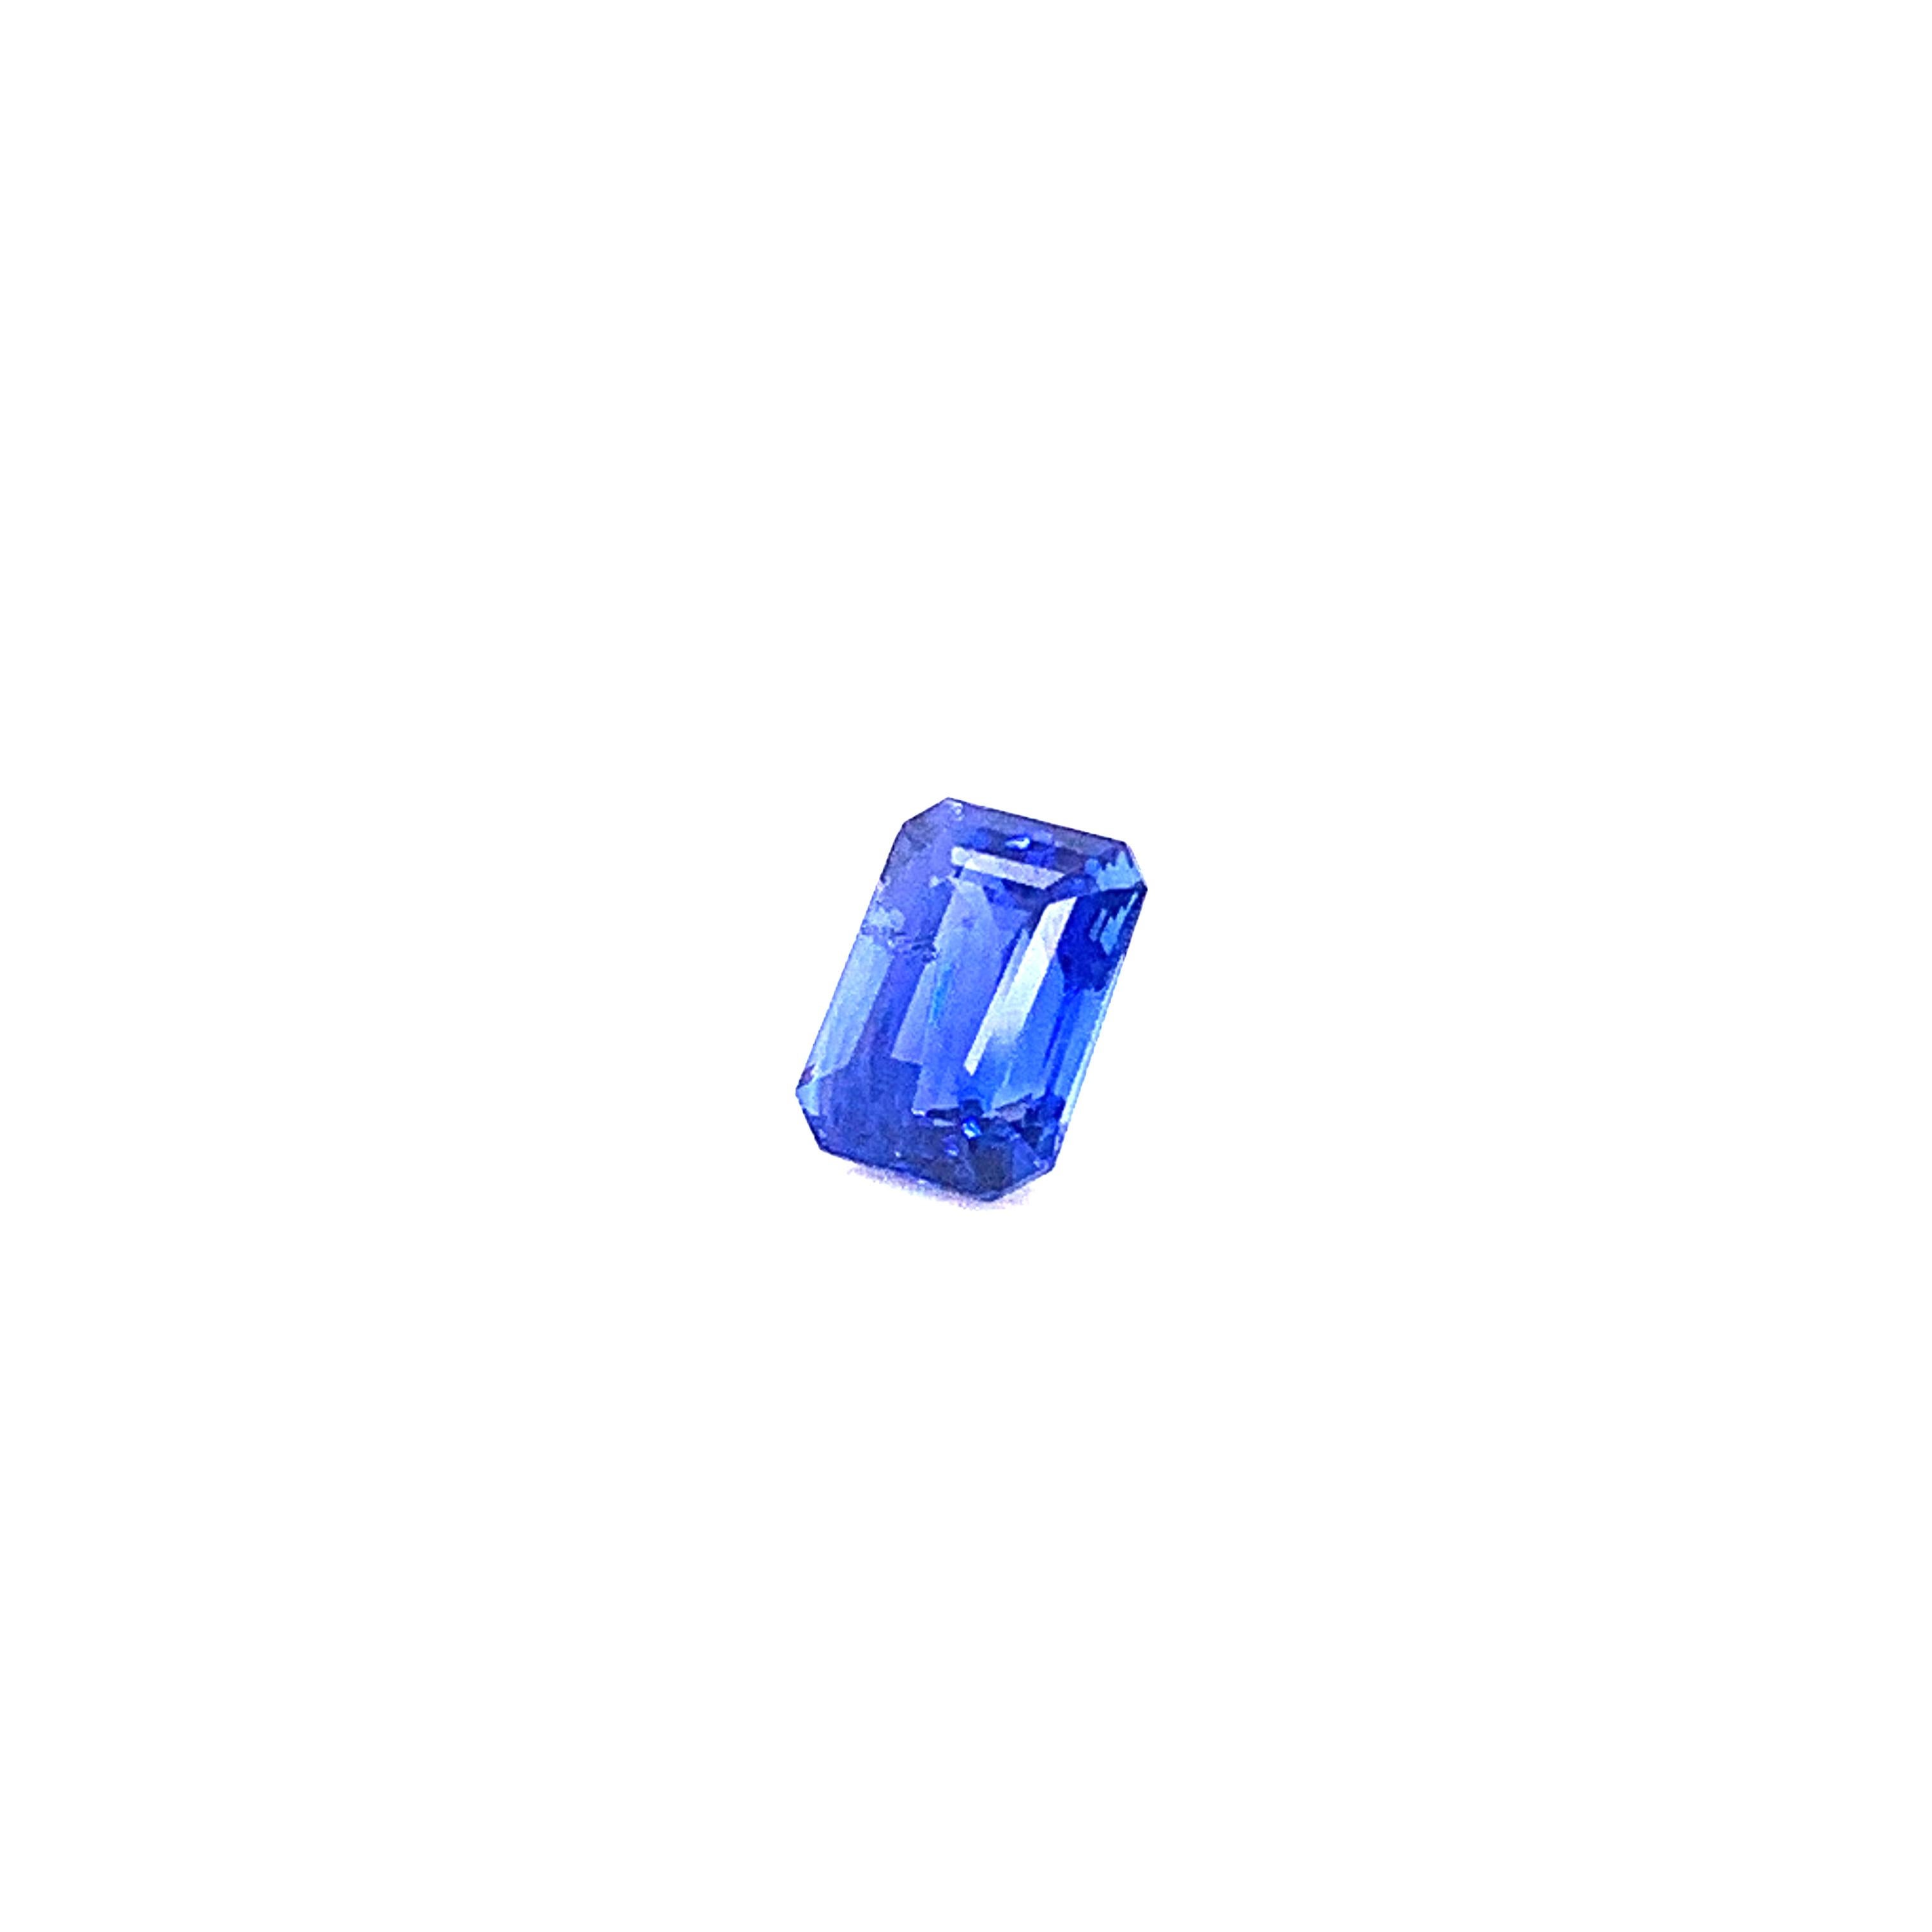 Saphir bleu royal vif de 2,30 carats, taille octogonale :

Il s'agit d'un saphir naturel bleu royal vif, taillé en octogone, pesant 2,30 carats. Originaire du Sri Lanka, le saphir est chauffé et possède une saturation de couleur bleue vive avec une